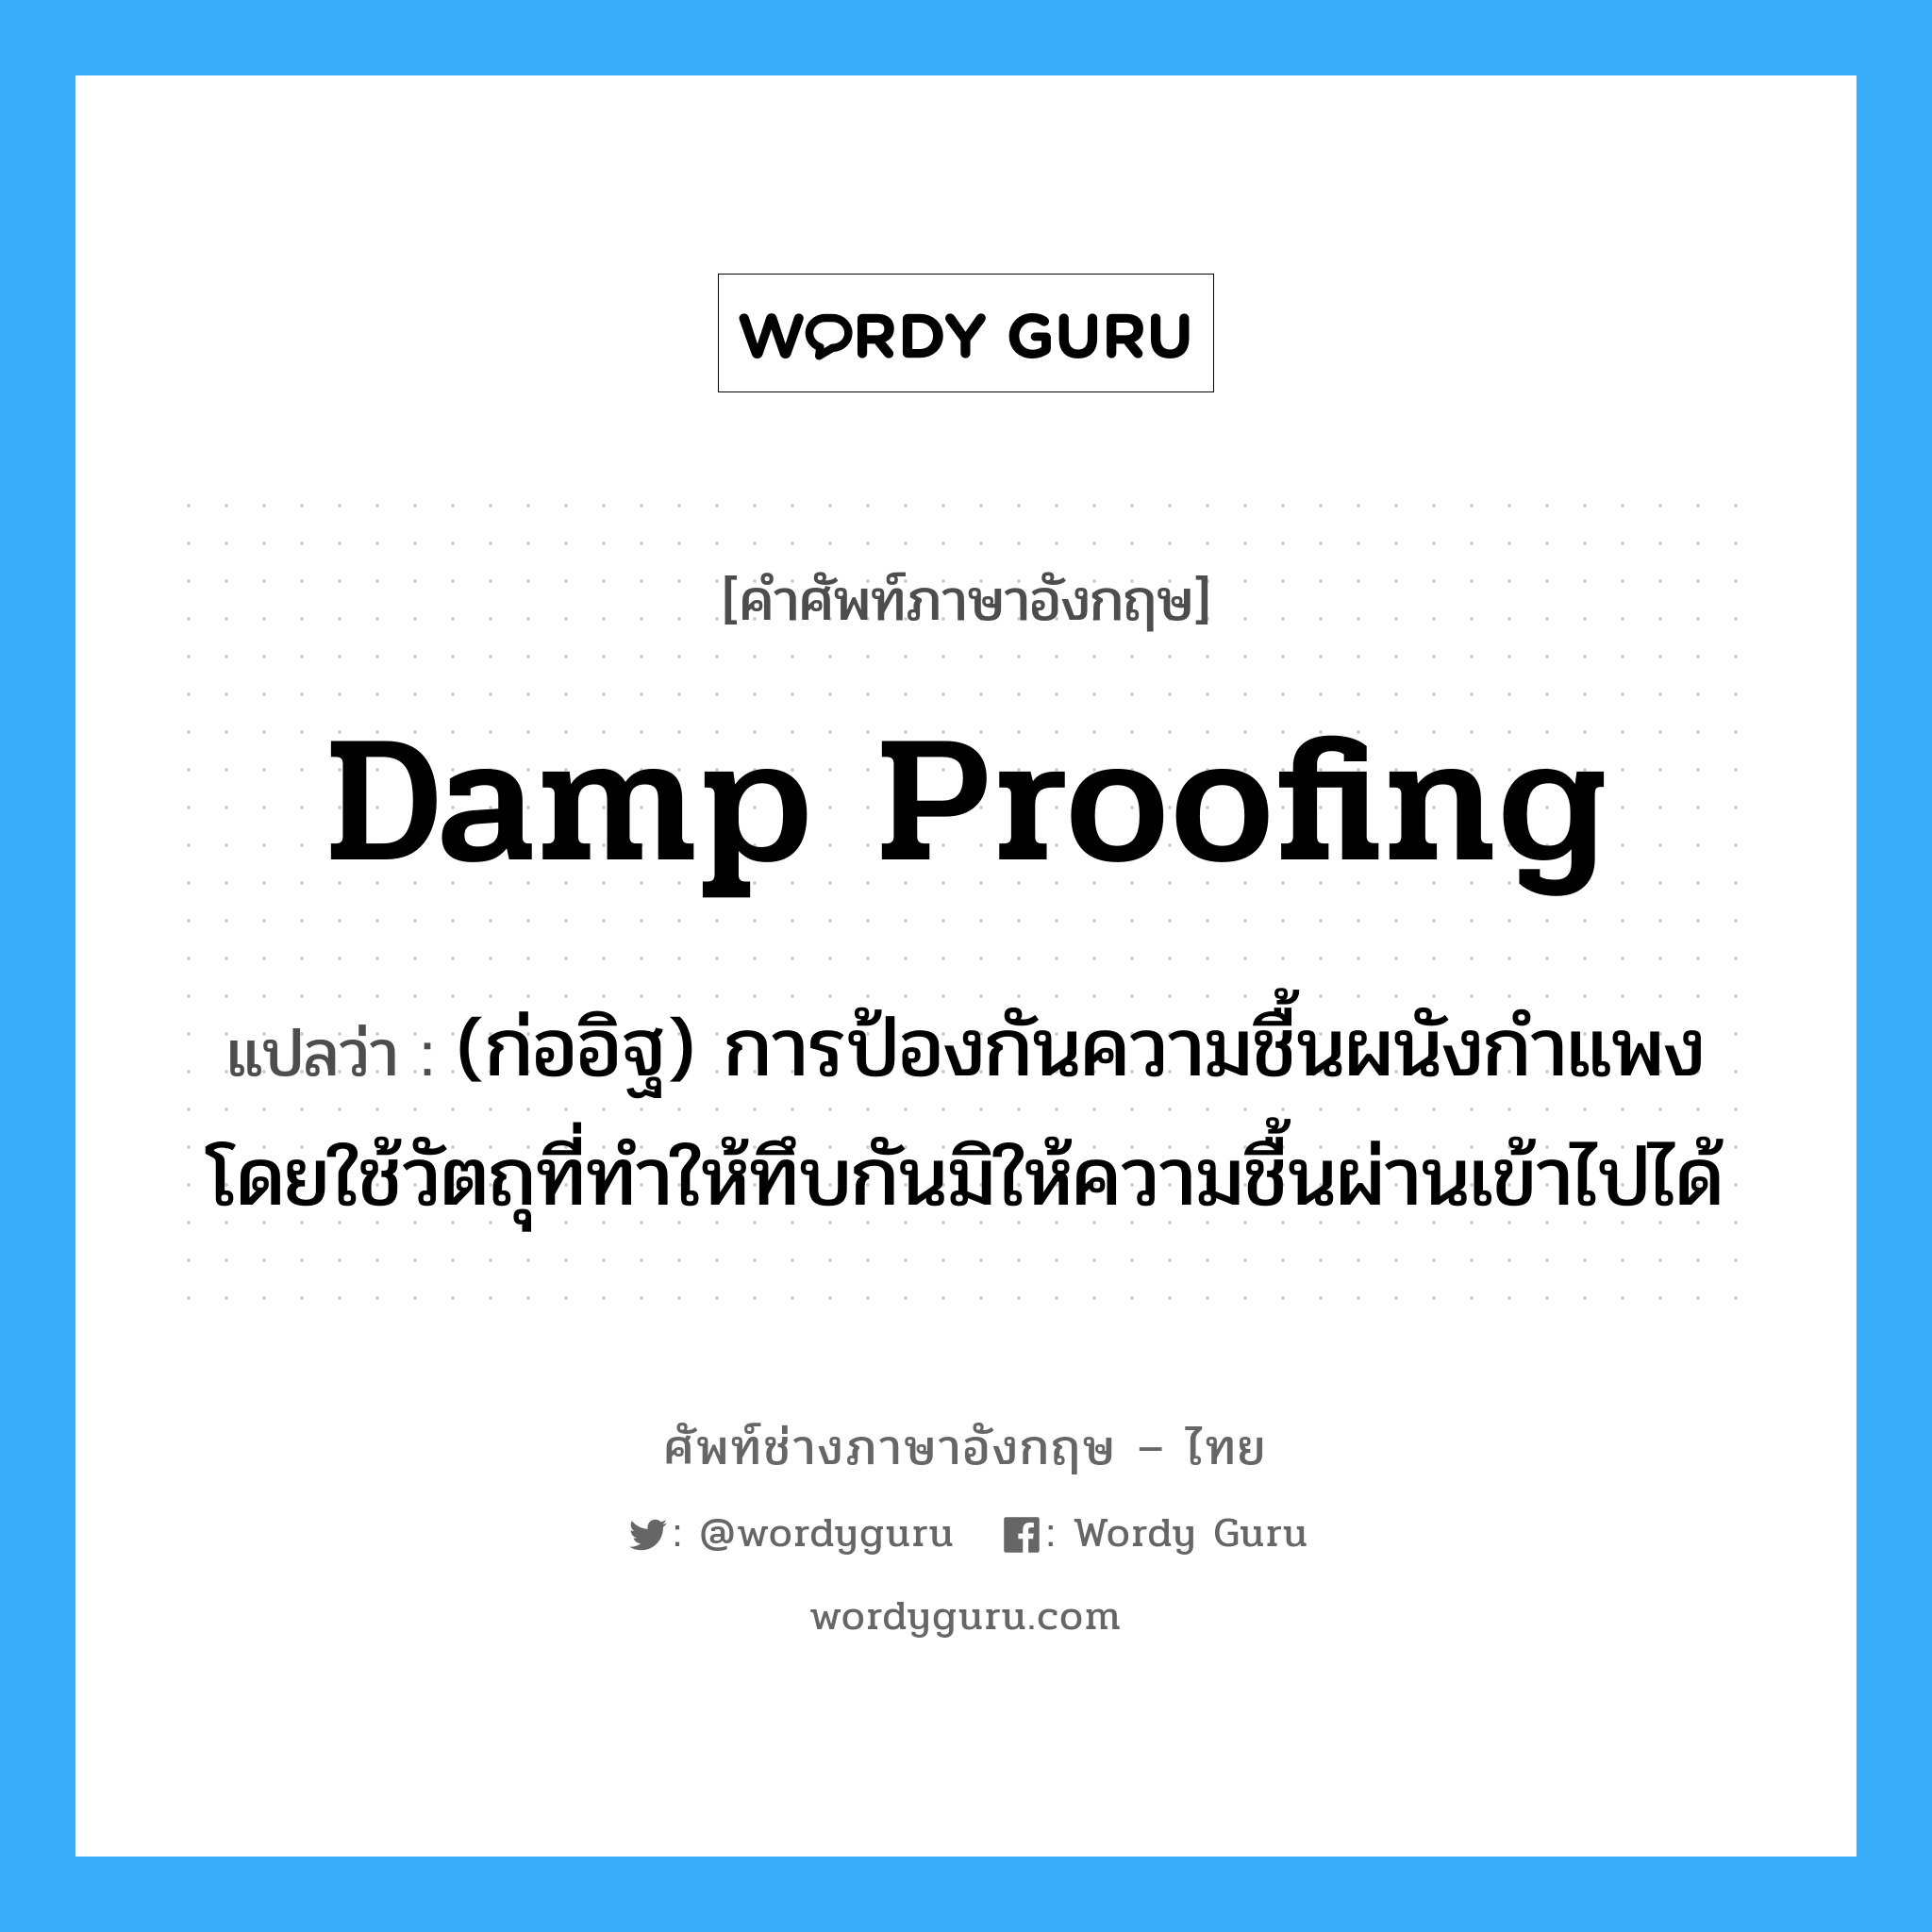 damp proofing แปลว่า?, คำศัพท์ช่างภาษาอังกฤษ - ไทย damp proofing คำศัพท์ภาษาอังกฤษ damp proofing แปลว่า (ก่ออิฐ) การป้องกันความชื้นผนังกำแพง โดยใช้วัตถุที่ทำให้ทึบกันมิให้ความชื้นผ่านเข้าไปได้